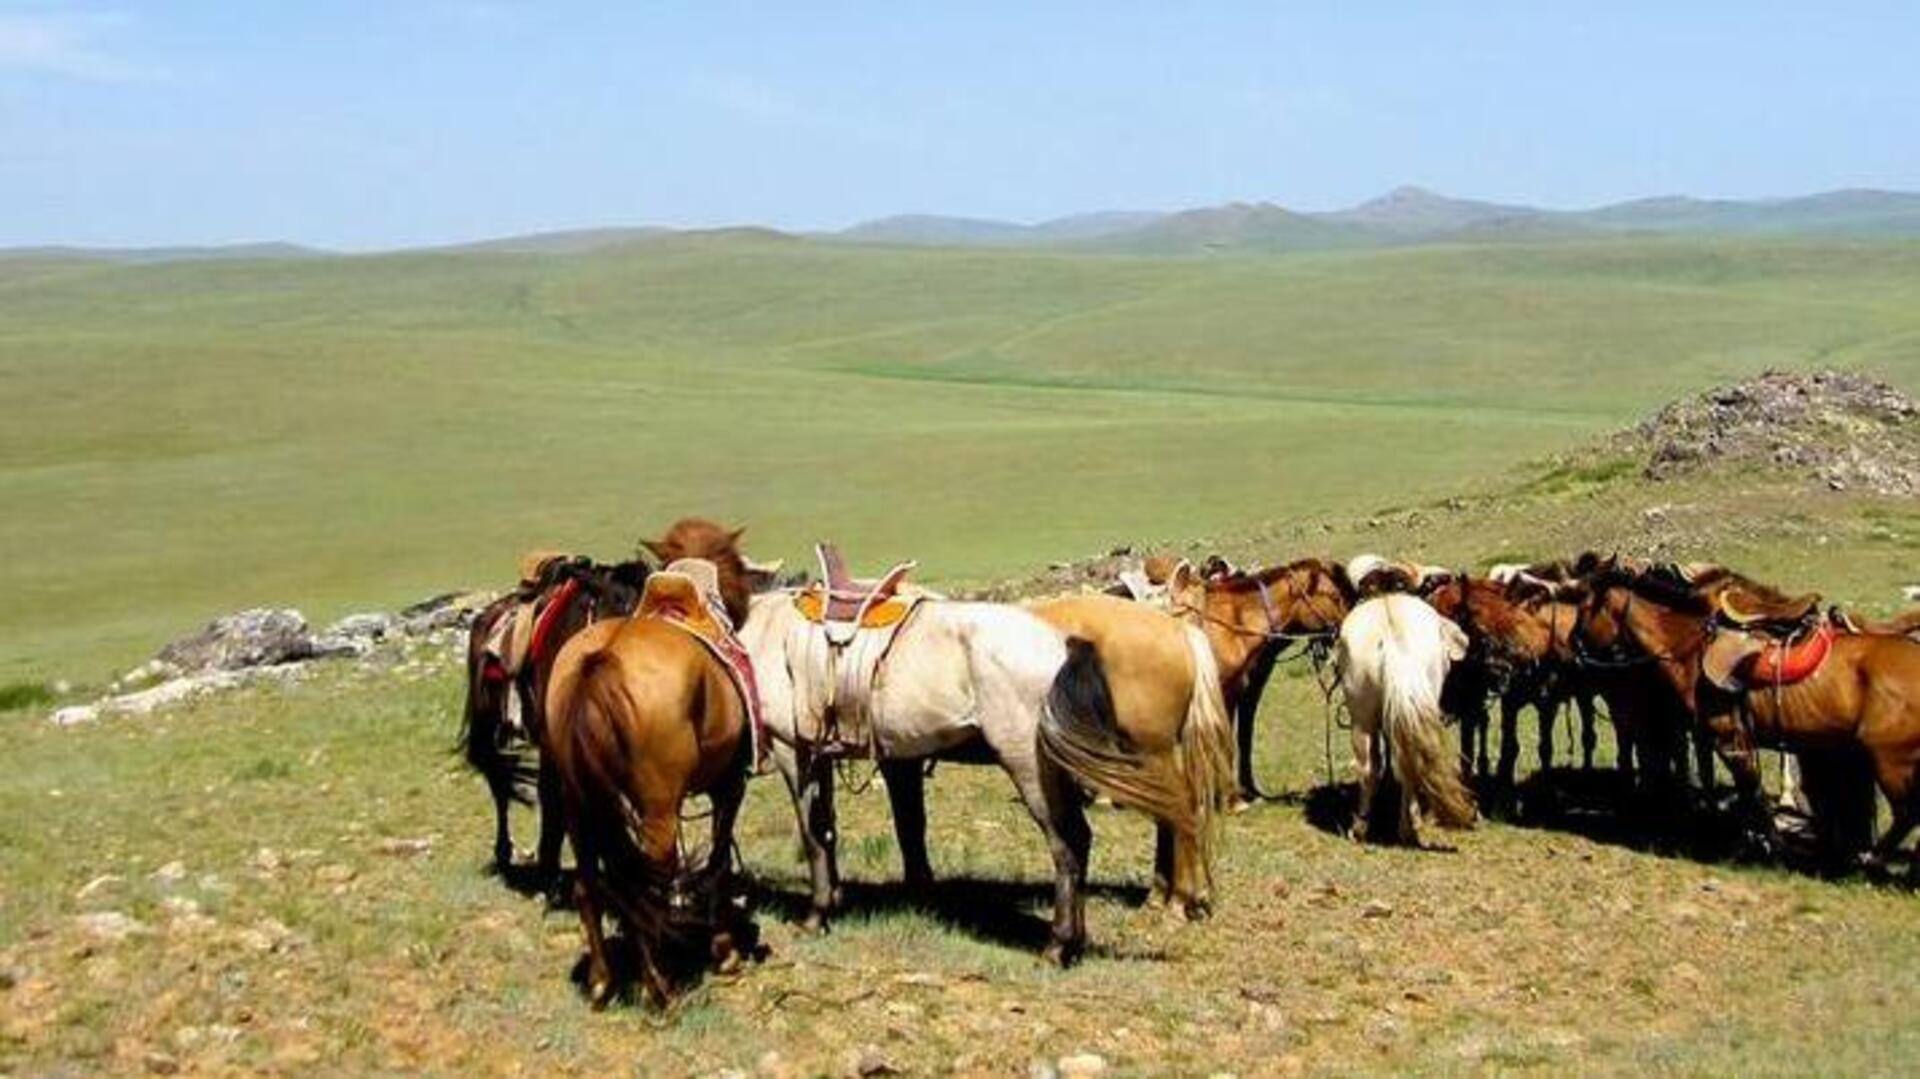 Rekomendasi Wisata: Berpacu Melintasi Padang Rumput Mongolia